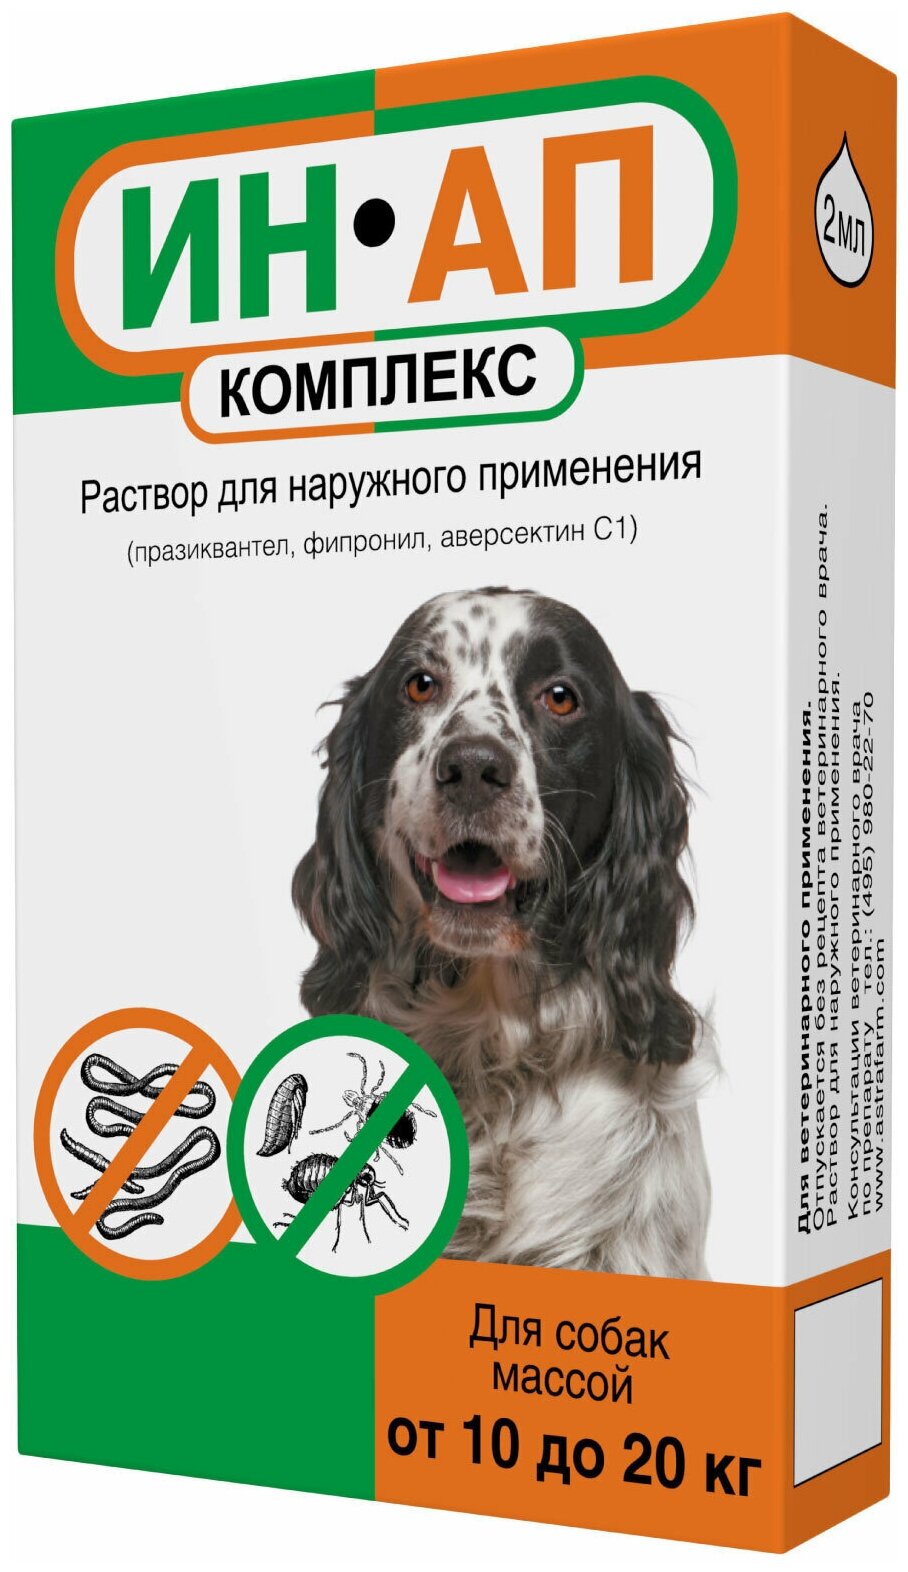 Астрафарм Капли против экто- и эндопаразитов ИН-АП для собак массой от 10 до 20 кг